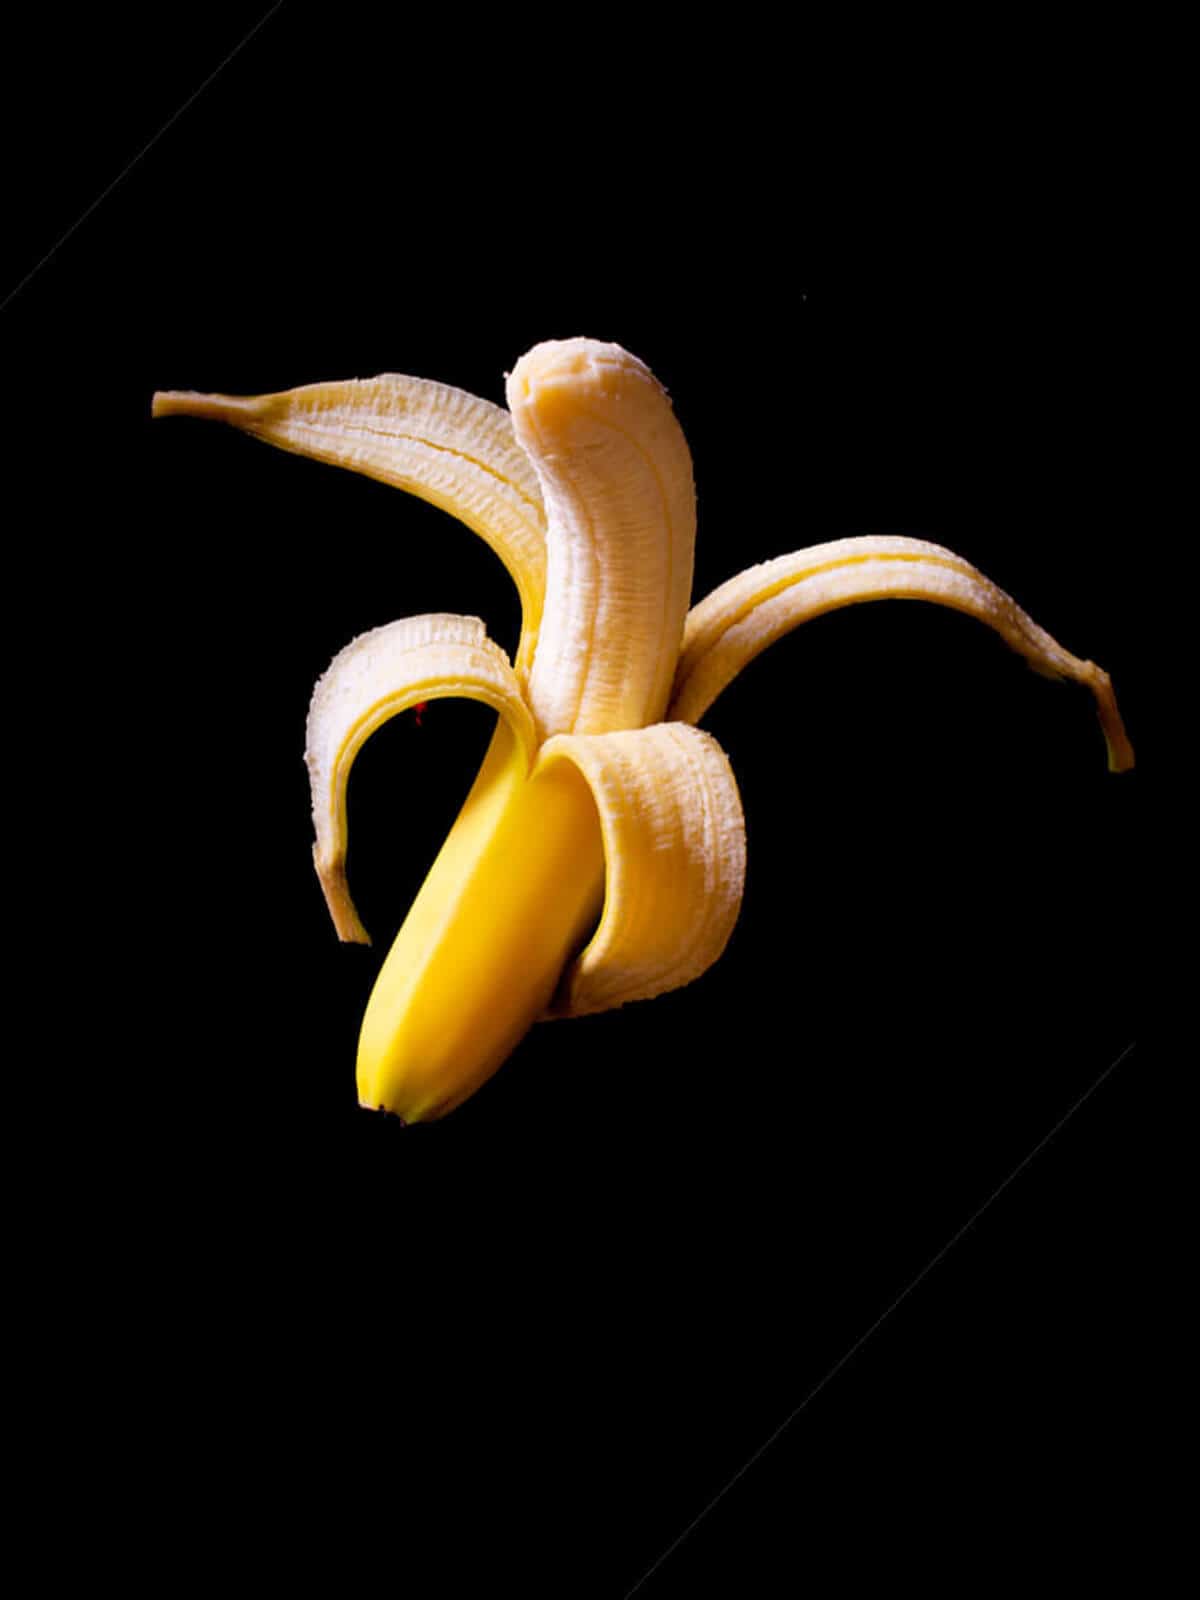 pealed banana